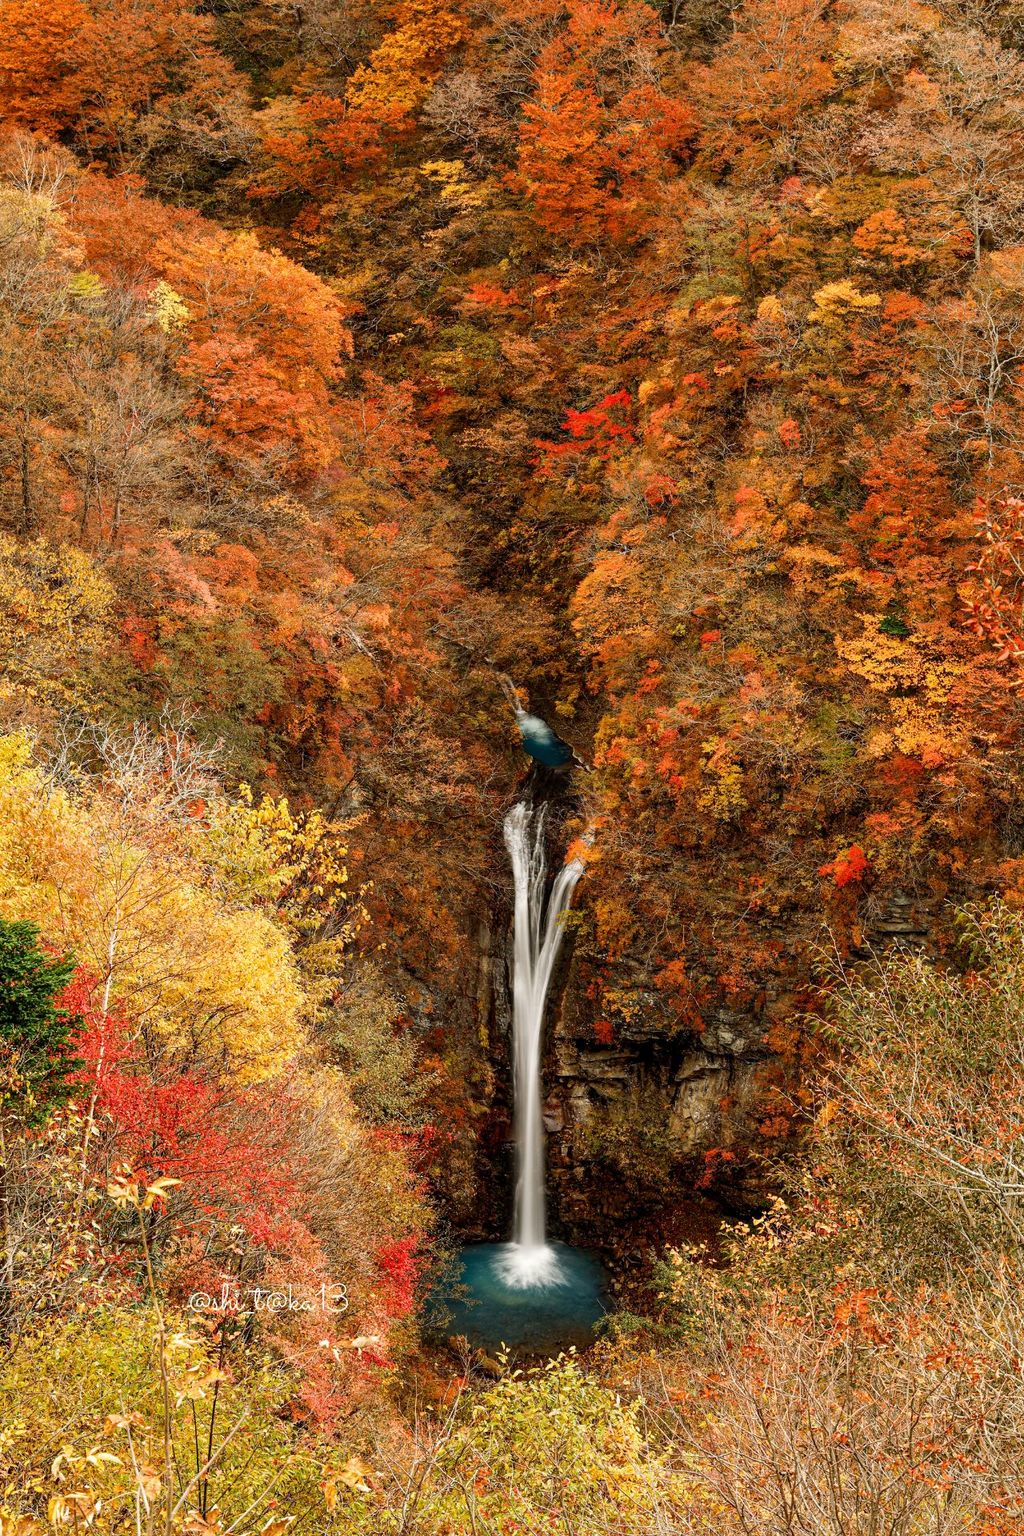 駒止の滝 滝壺の水の色が神秘的 大自然の木々の奥に見える 2段の滝 Recotrip レコトリップ